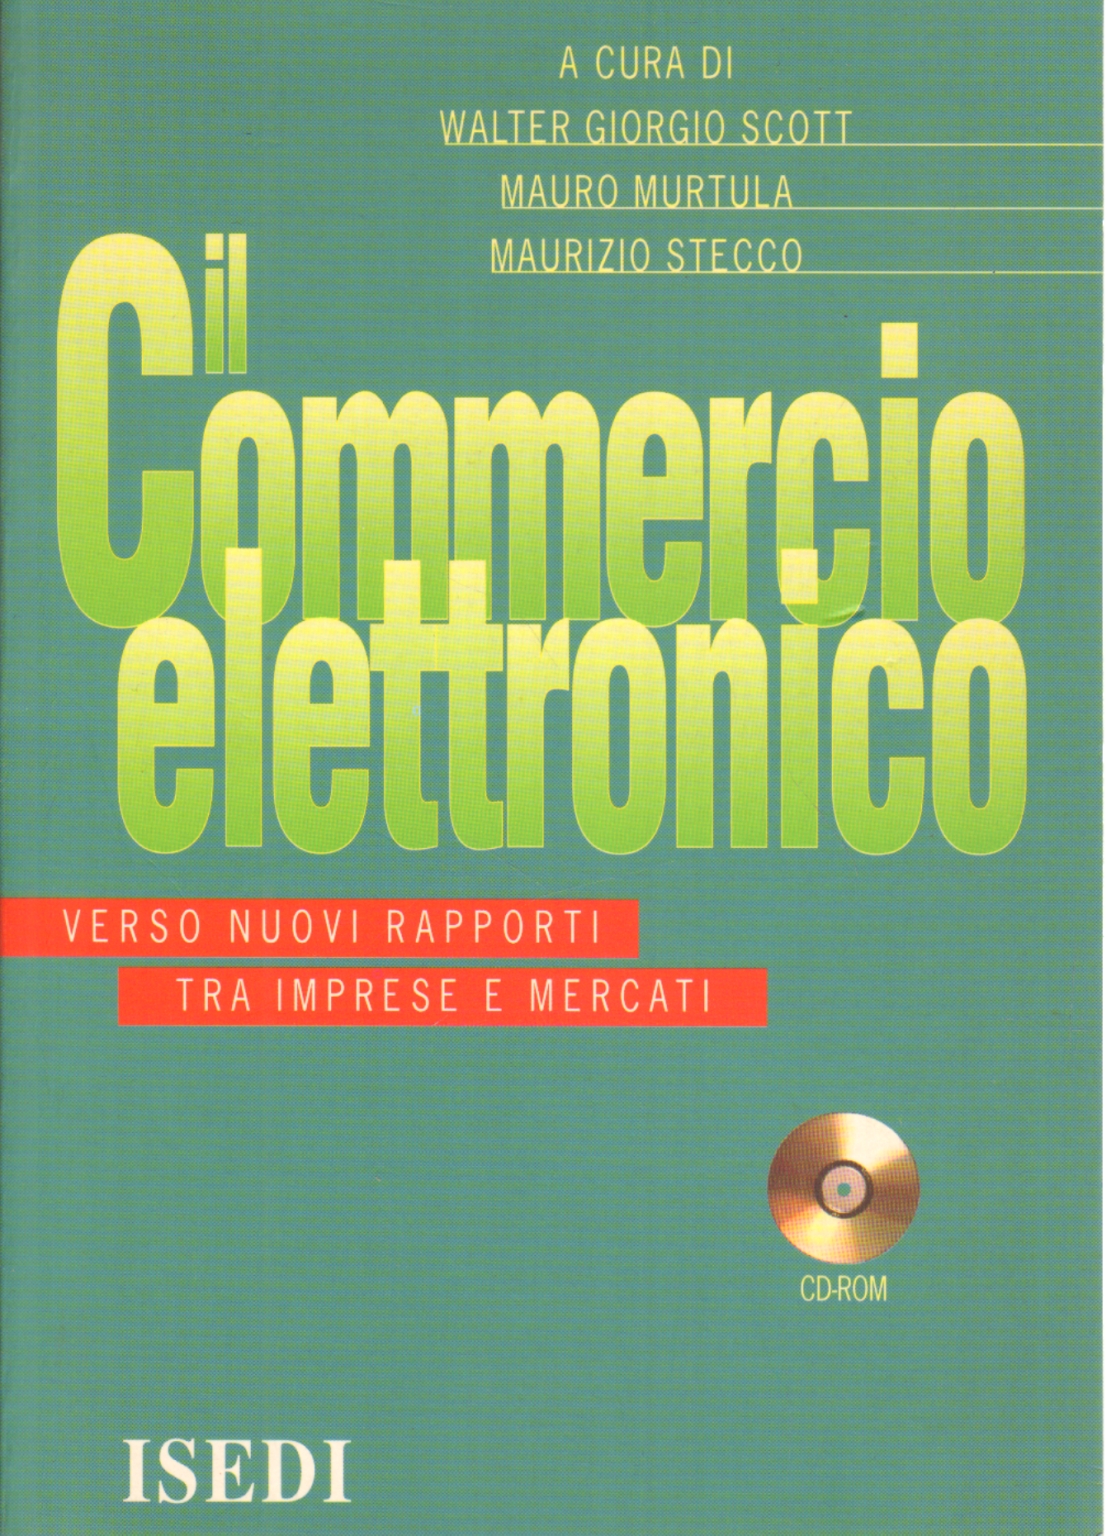 Il commercio elettronico (con CD-ROM), Walter Giorgio Scott Mauro Murtula Maurizio Stecco